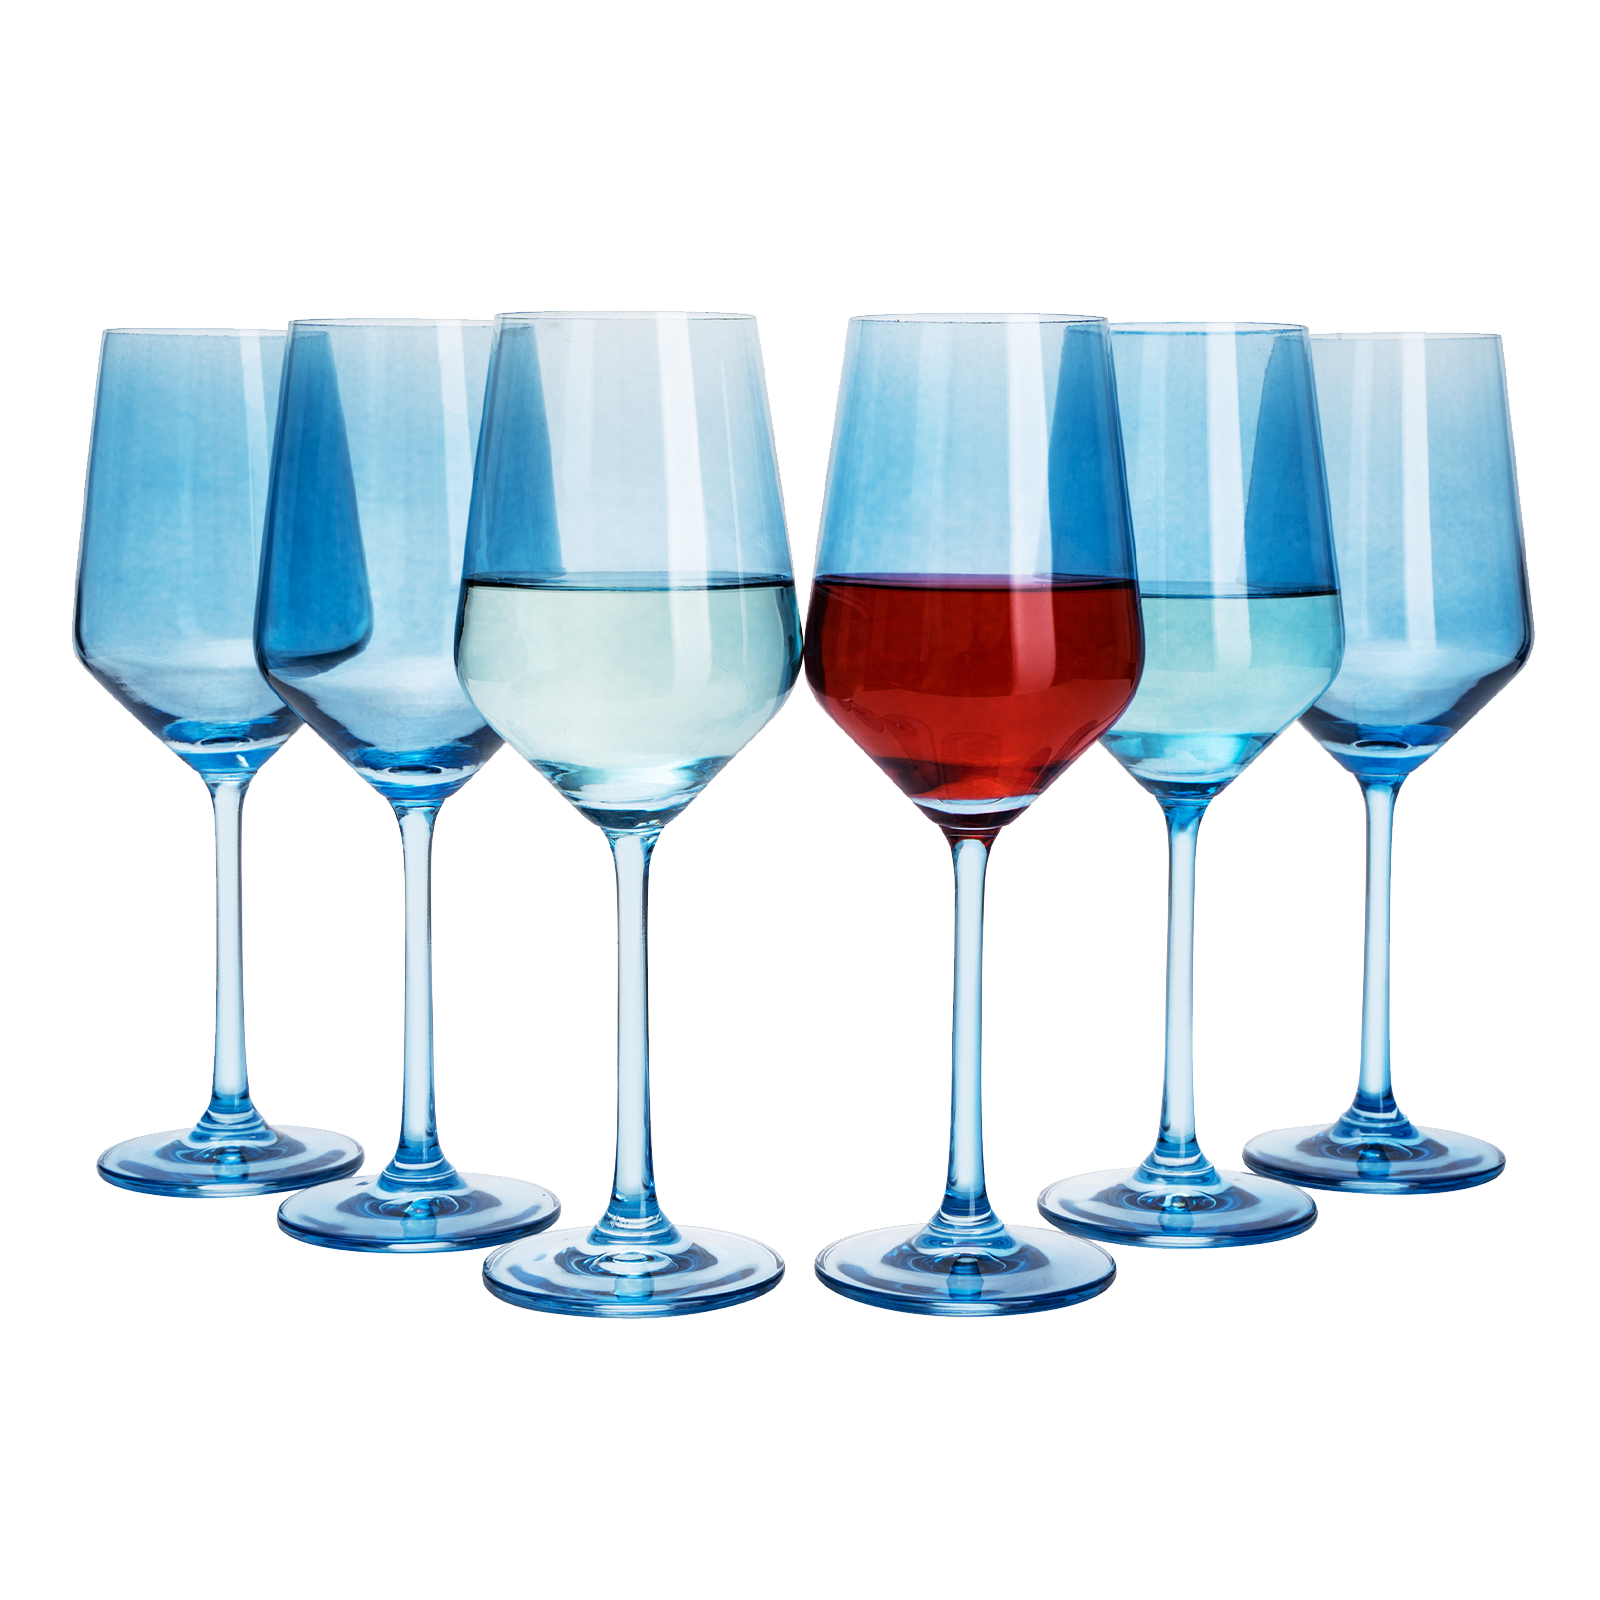 Vintage Cobalt Blue Cocktail ~ Martini Glasses, Set of 4, Cobalt Blue  Twisted Stemmed Cocktail glasses Vintage Cobalt Blue Champagne Glasses